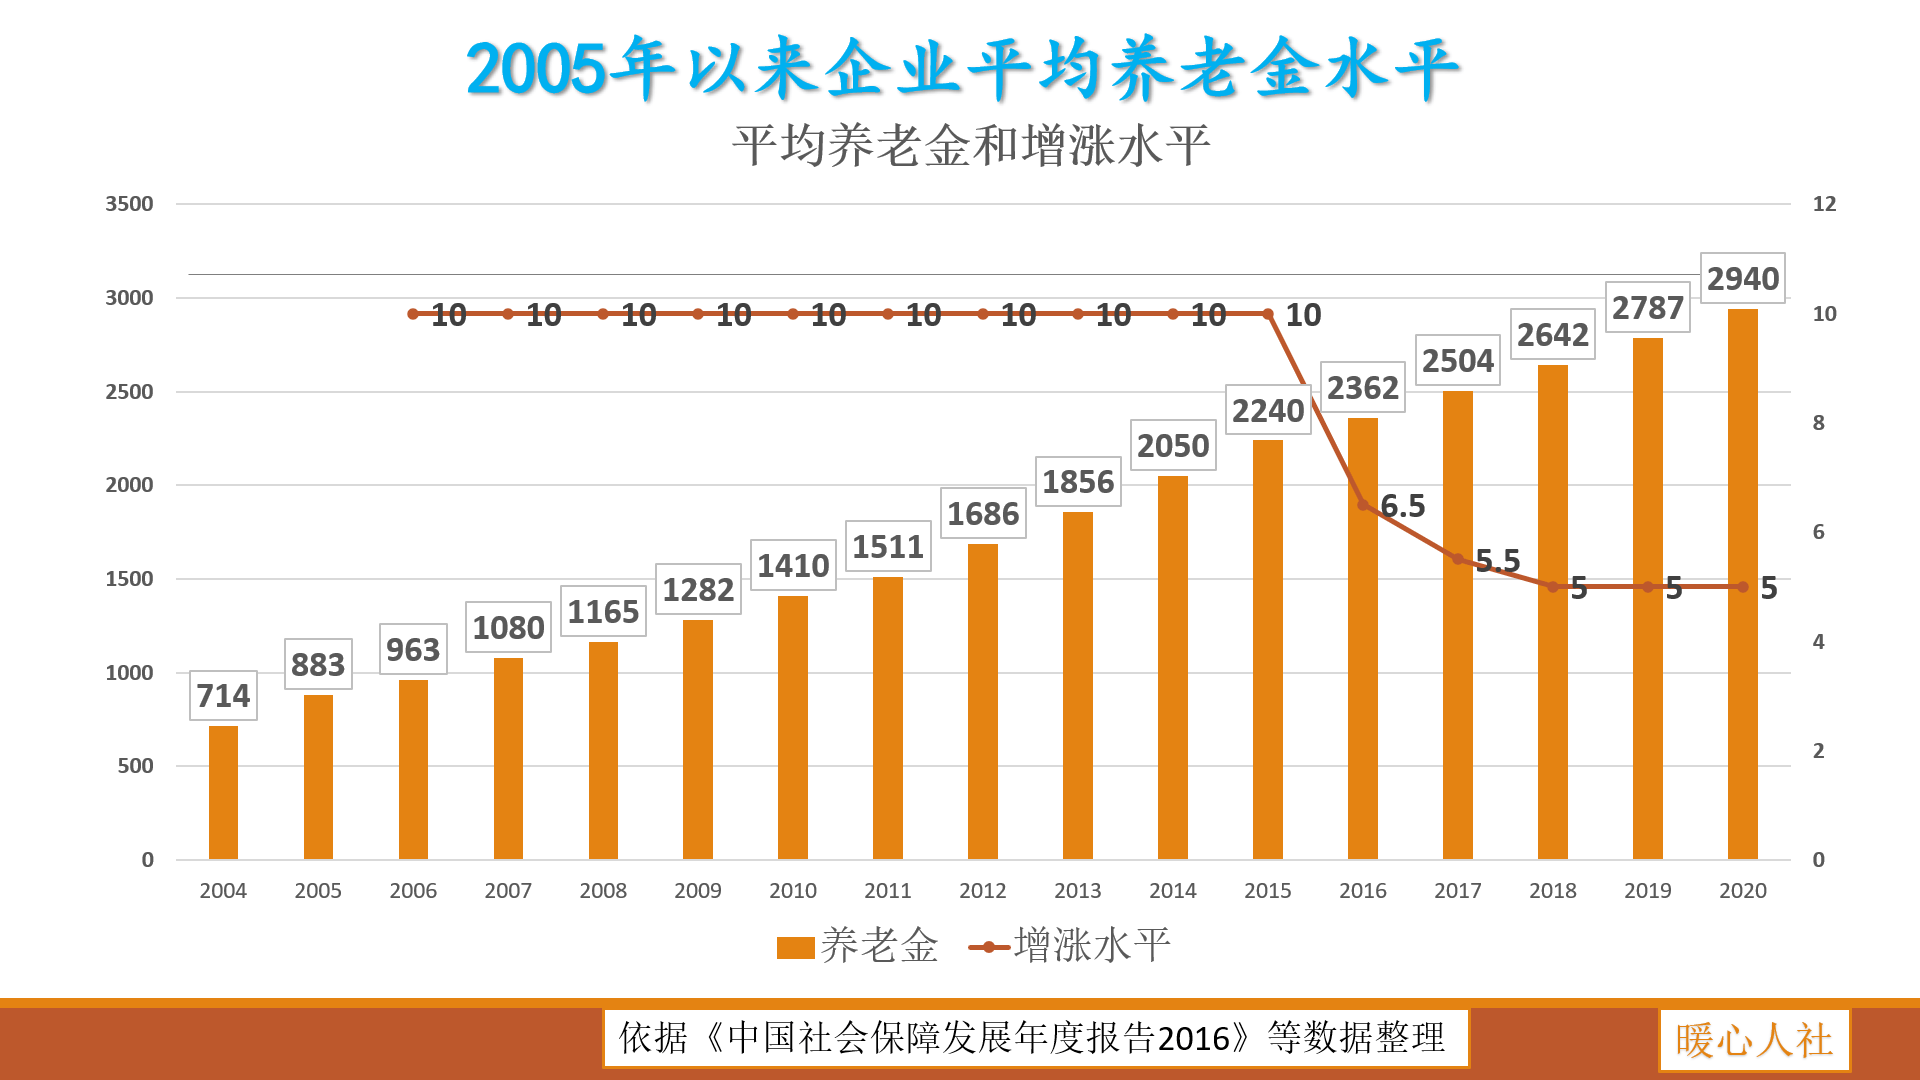 锦州人口2021年_每日互动 2021年 五一 假期旅游数据报告